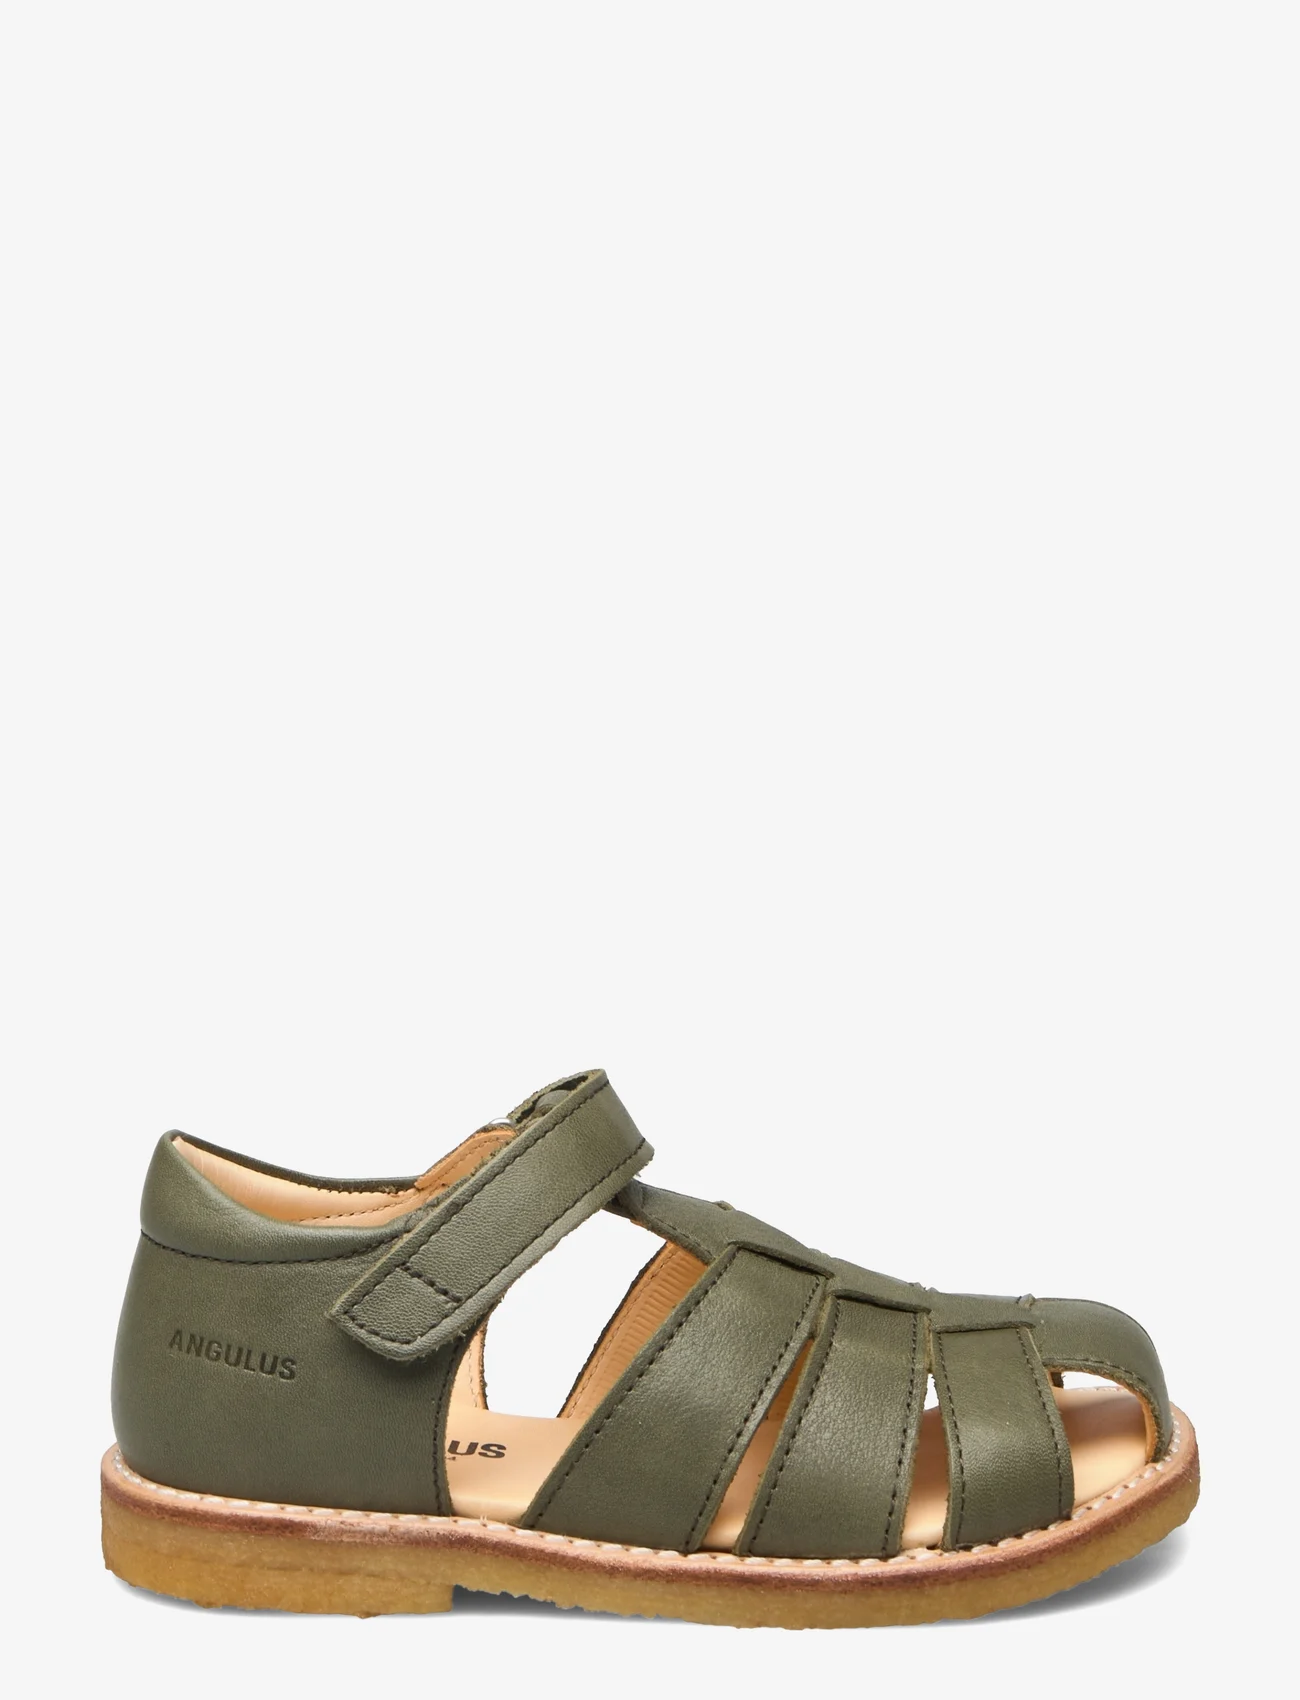 ANGULUS - Sandals - flat - closed toe - - gode sommertilbud - 1588 dark green - 1